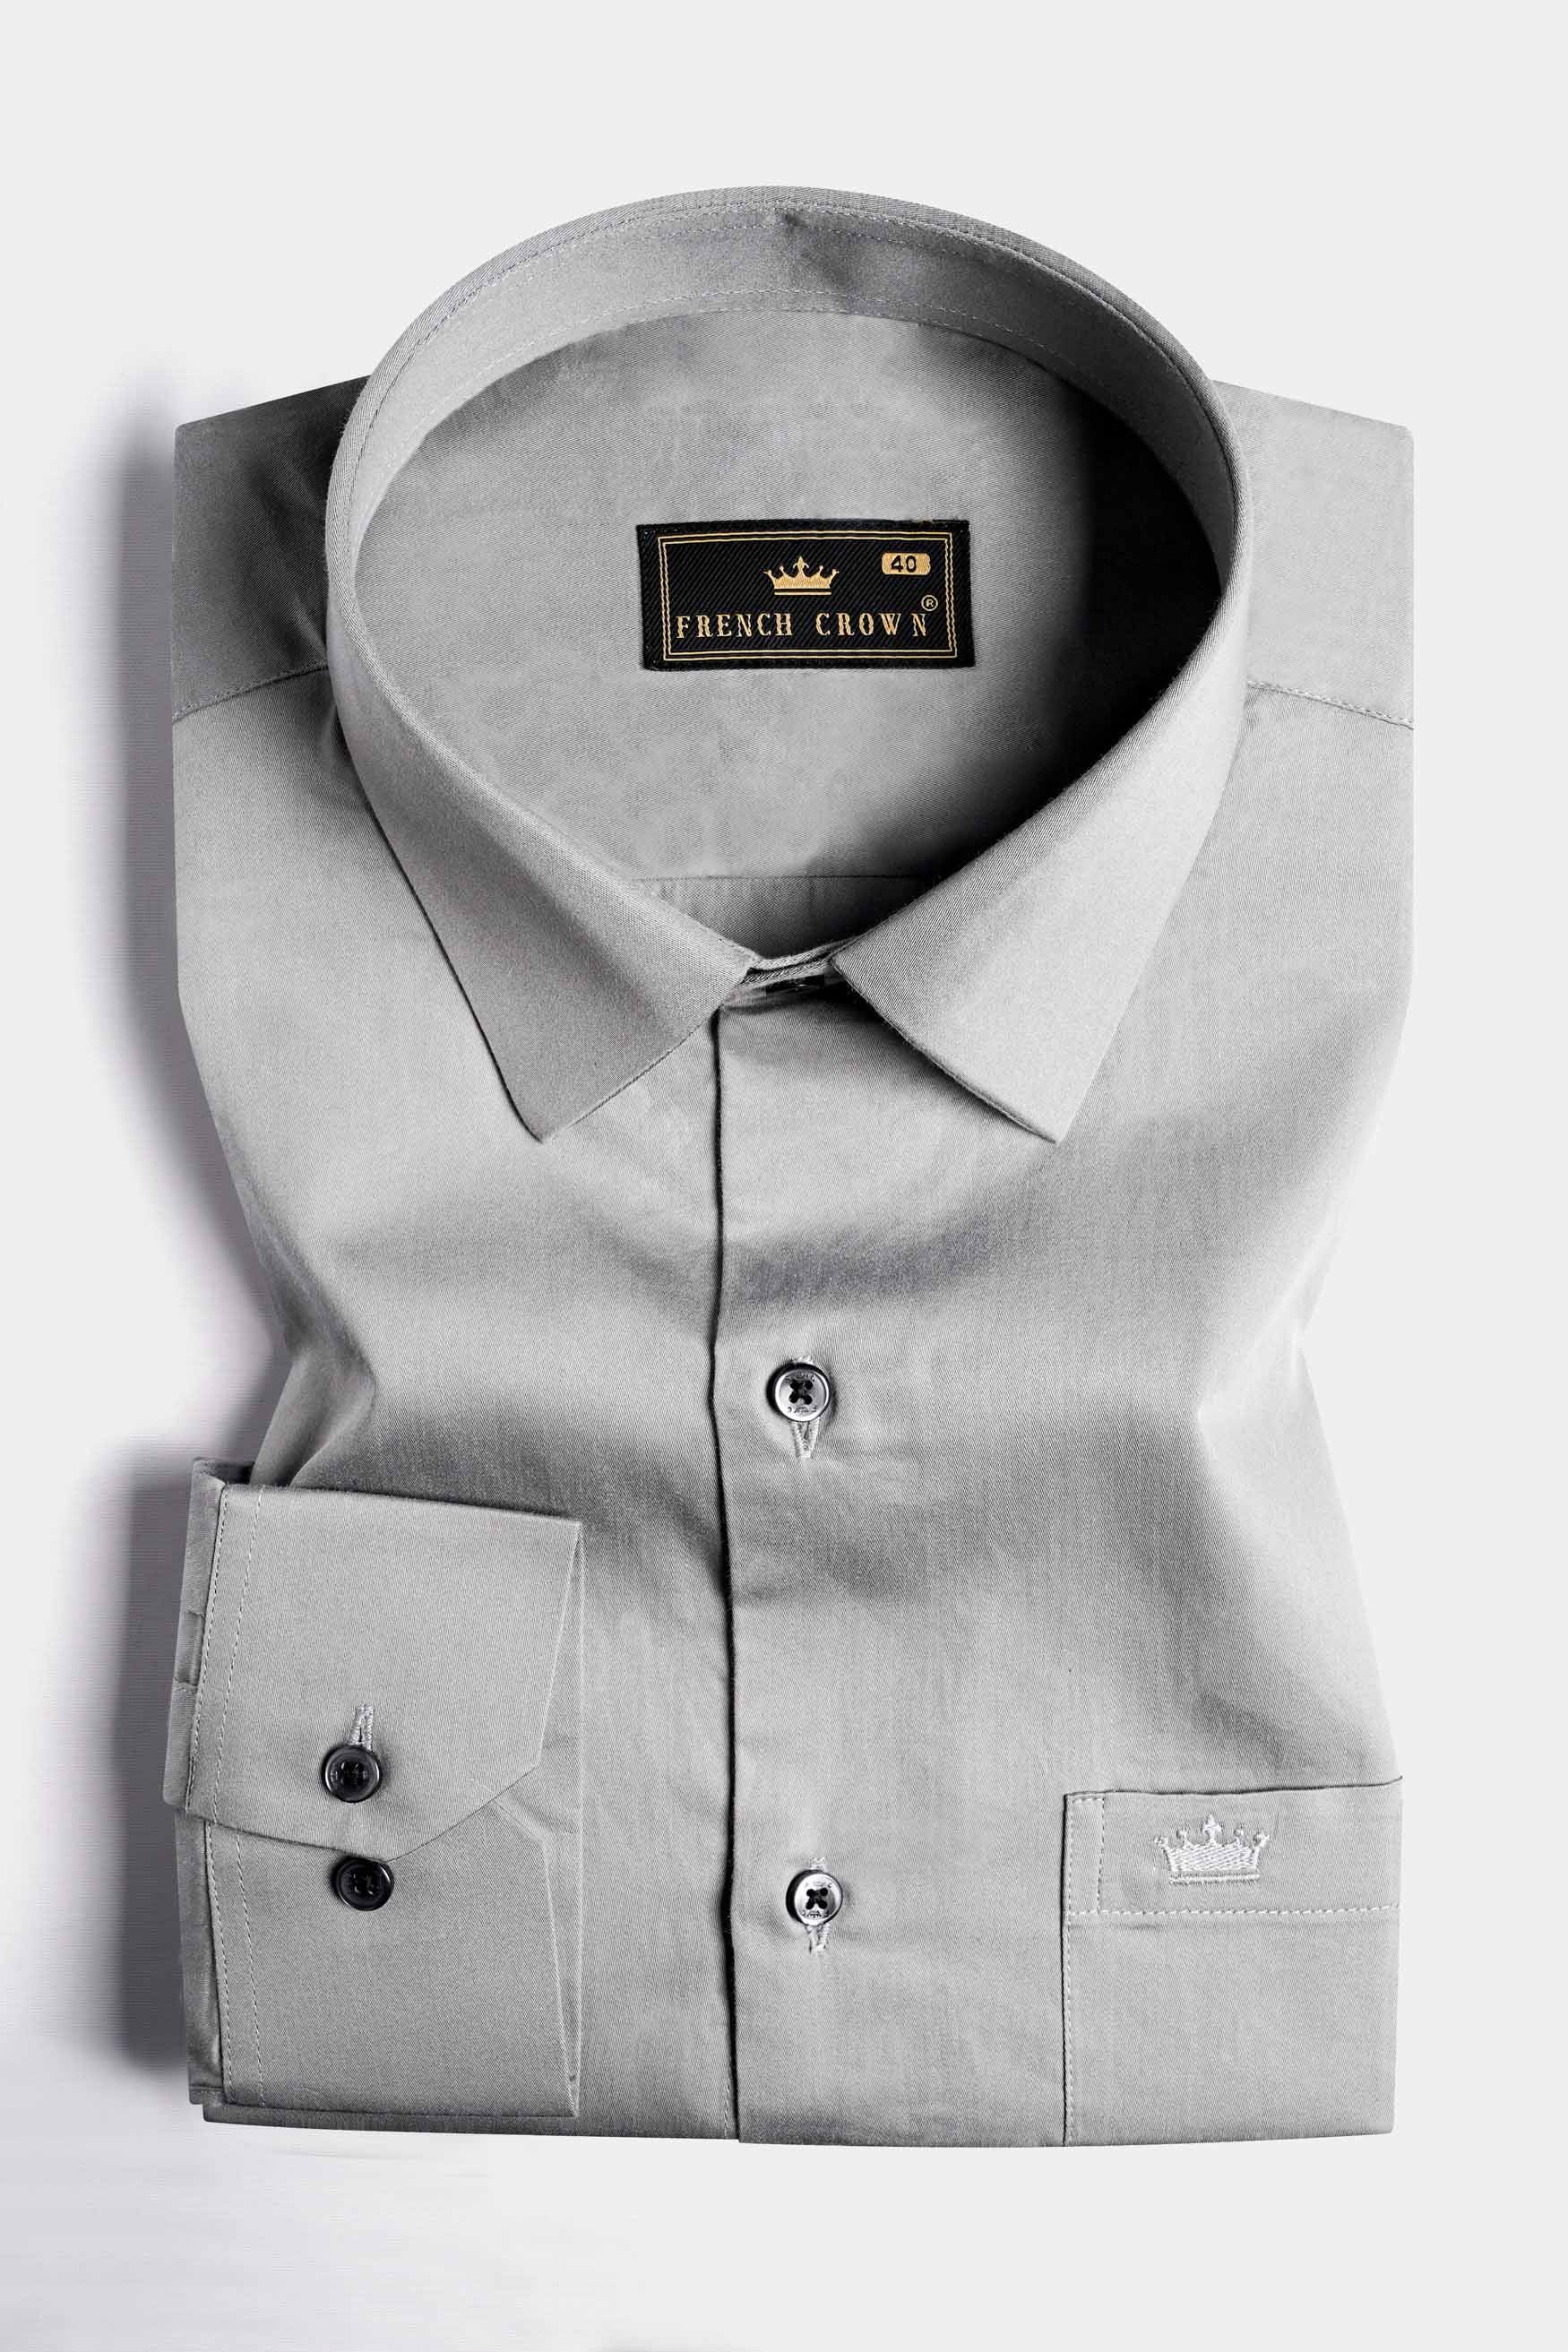 Chalice Gray Subtle Sheen Super Soft Premium Cotton Shirt